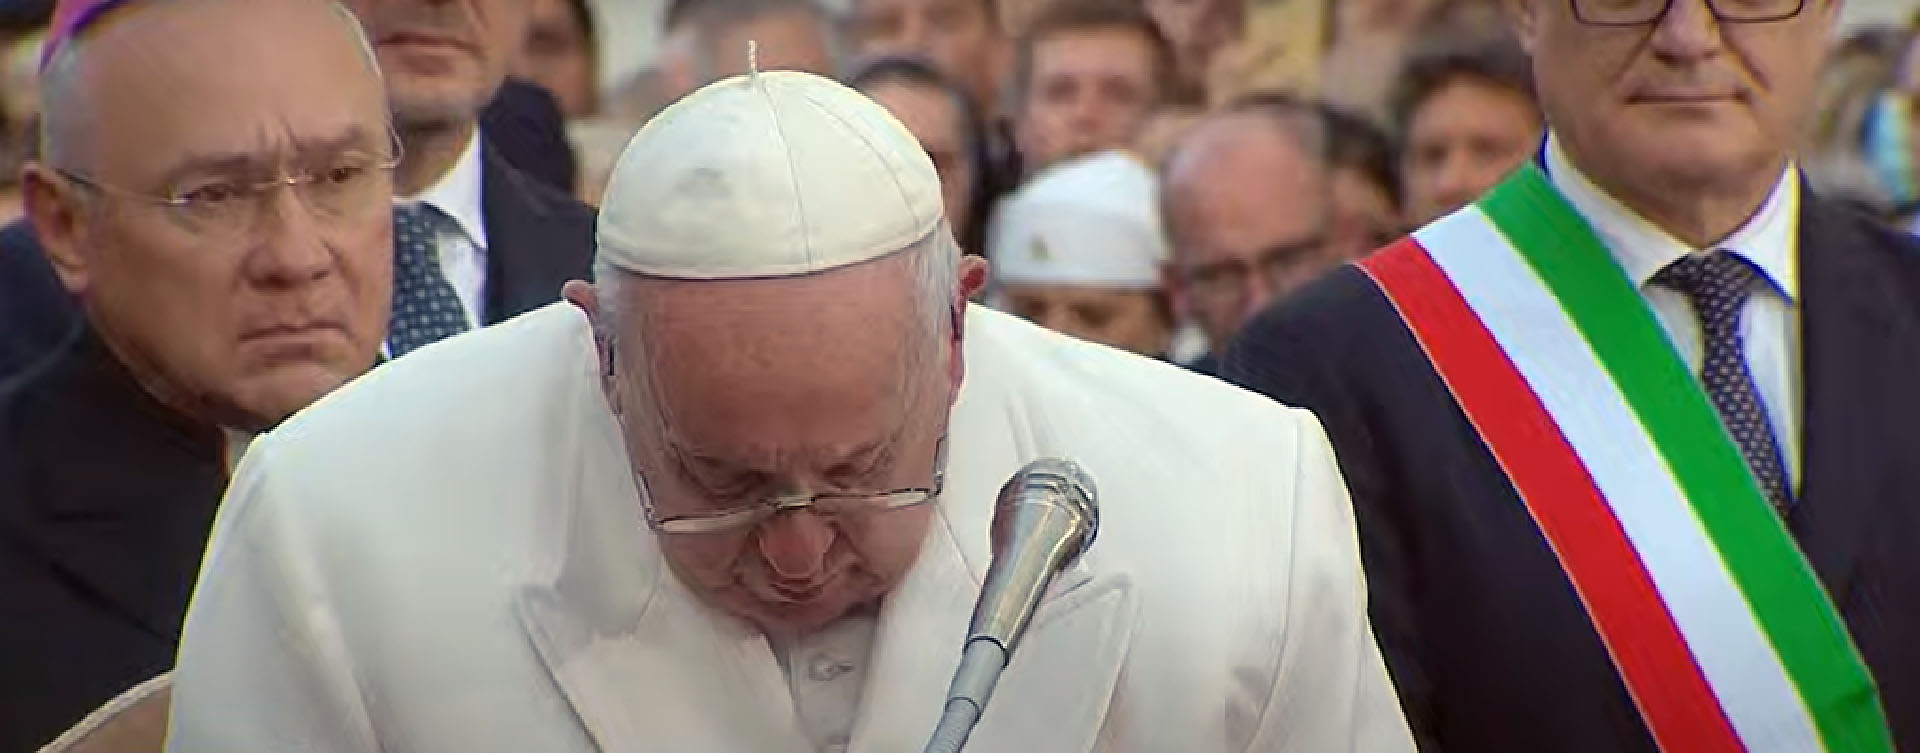 Fondant en larmes, à l'évocation de la l'Ukraine, le pape a interrompu son discours | Capture-écran 